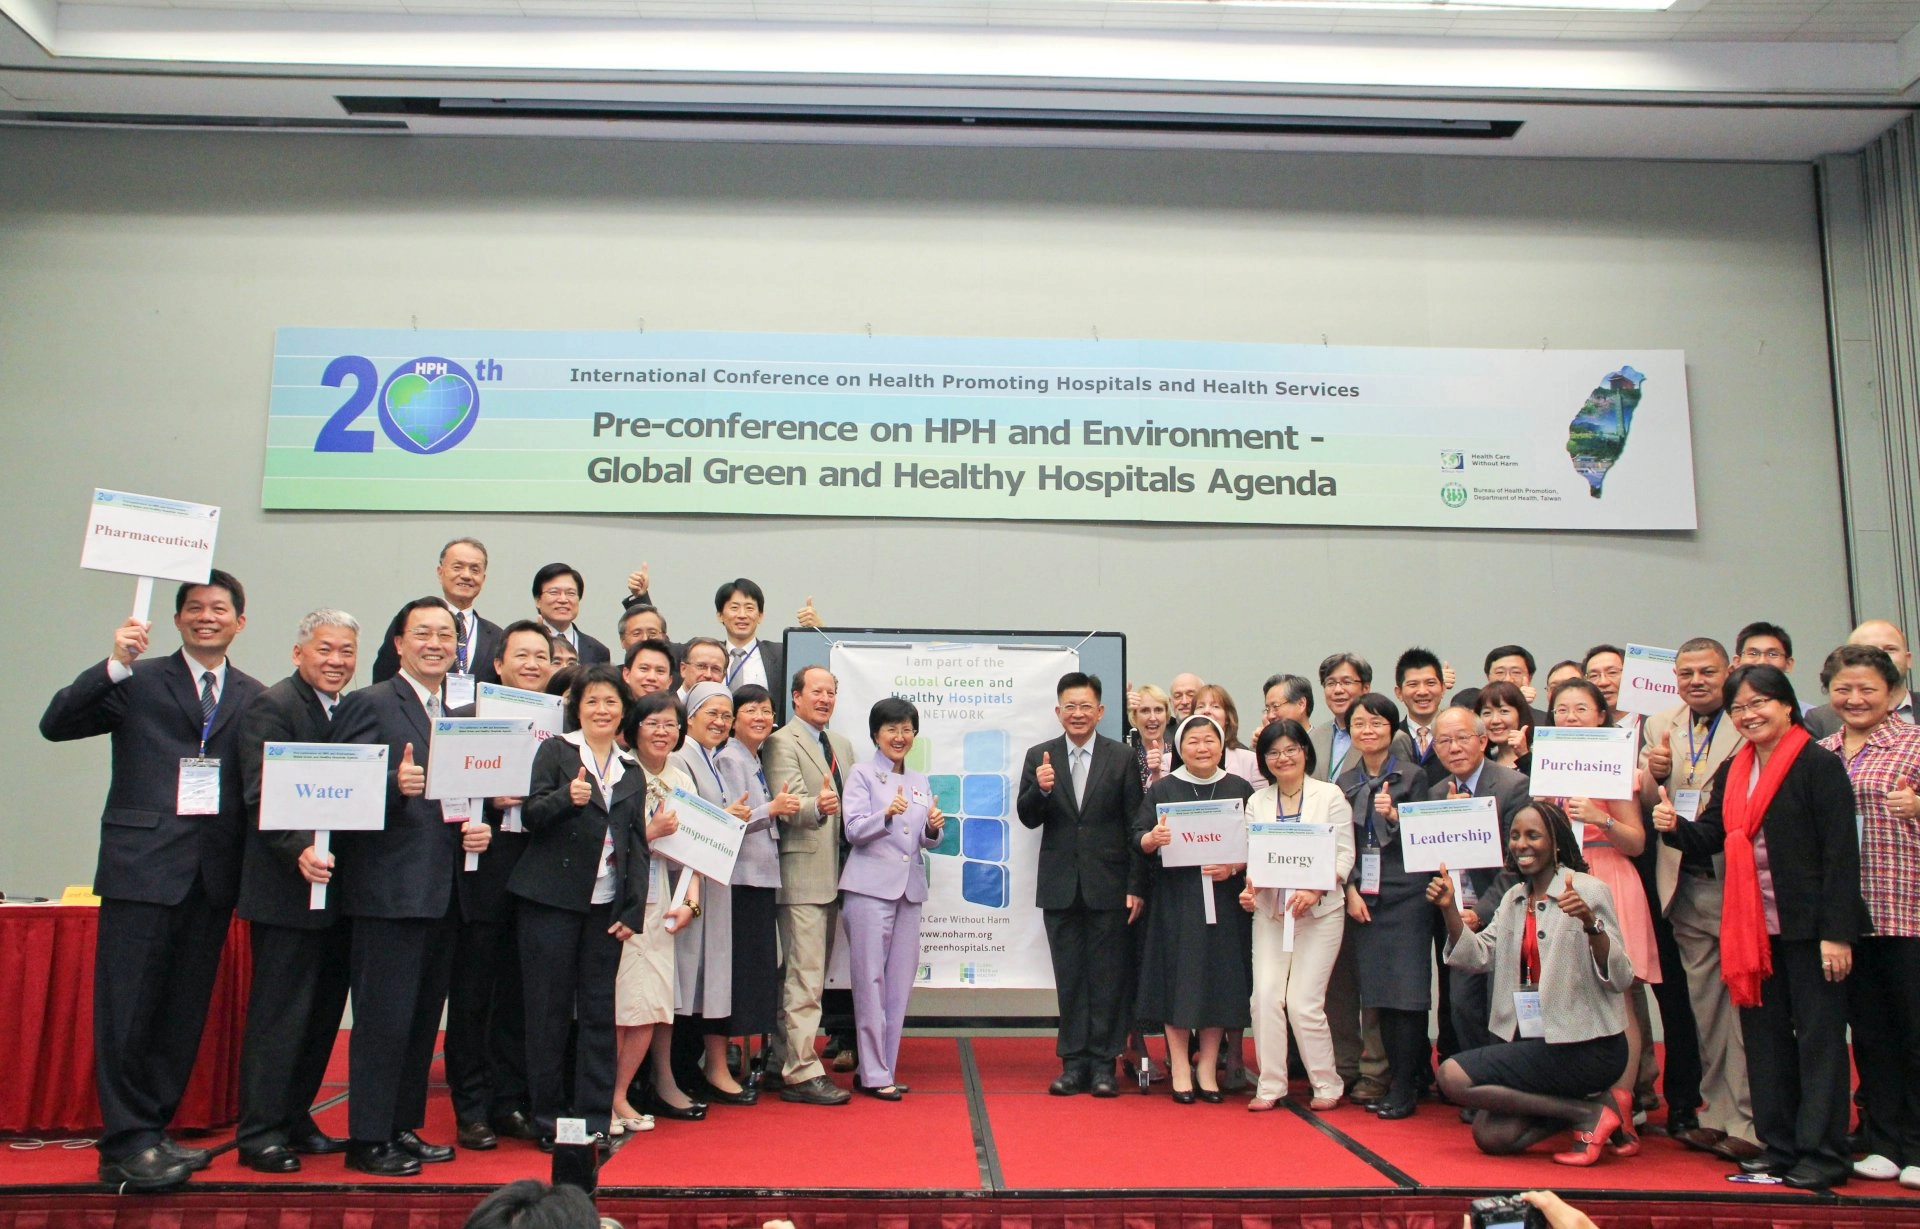 林俊龍執行長率領慈濟團隊辦理2012年第20屆HPH年會，此次為HPH年會截至目前唯一移師至亞洲辦理。